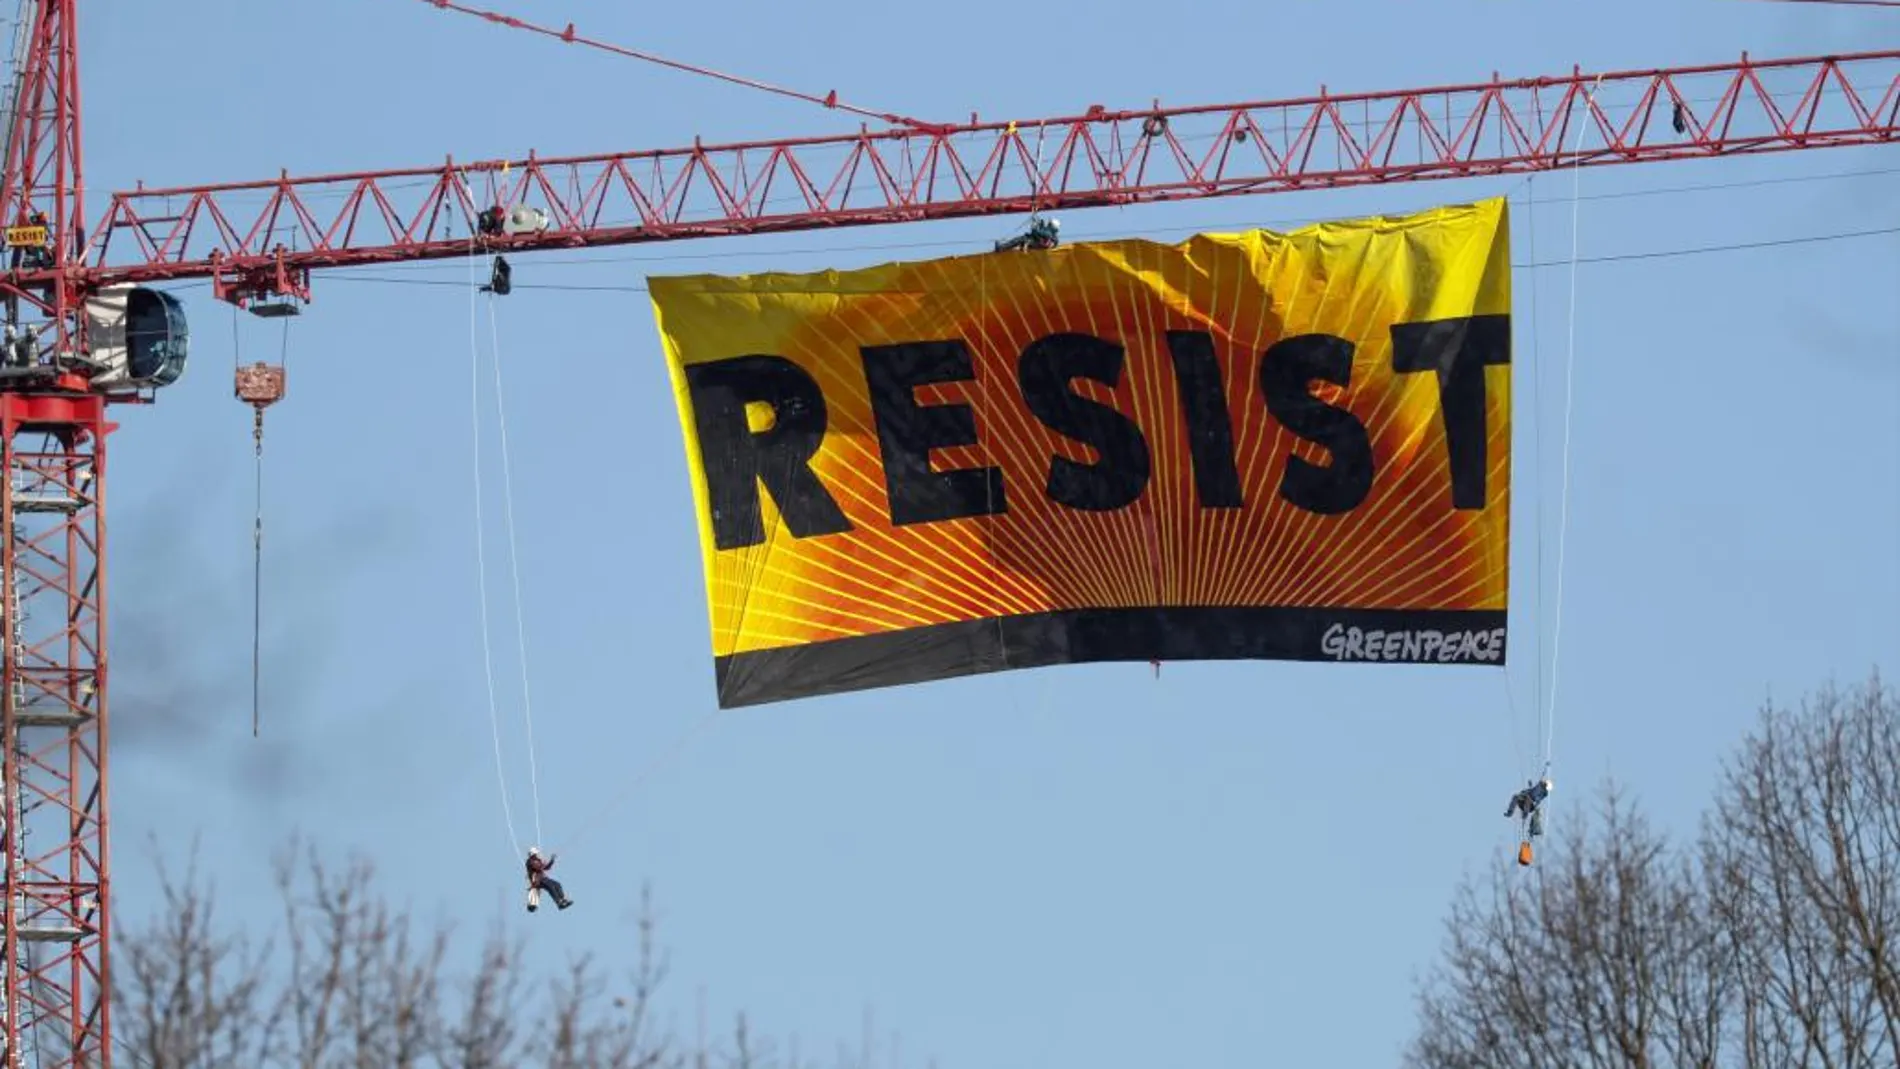 Siete activistas de Greenpeace extienden una bandera con la palabra "Resist"(lit. Resistir) desde una grúa cerca de la Casa Blanca